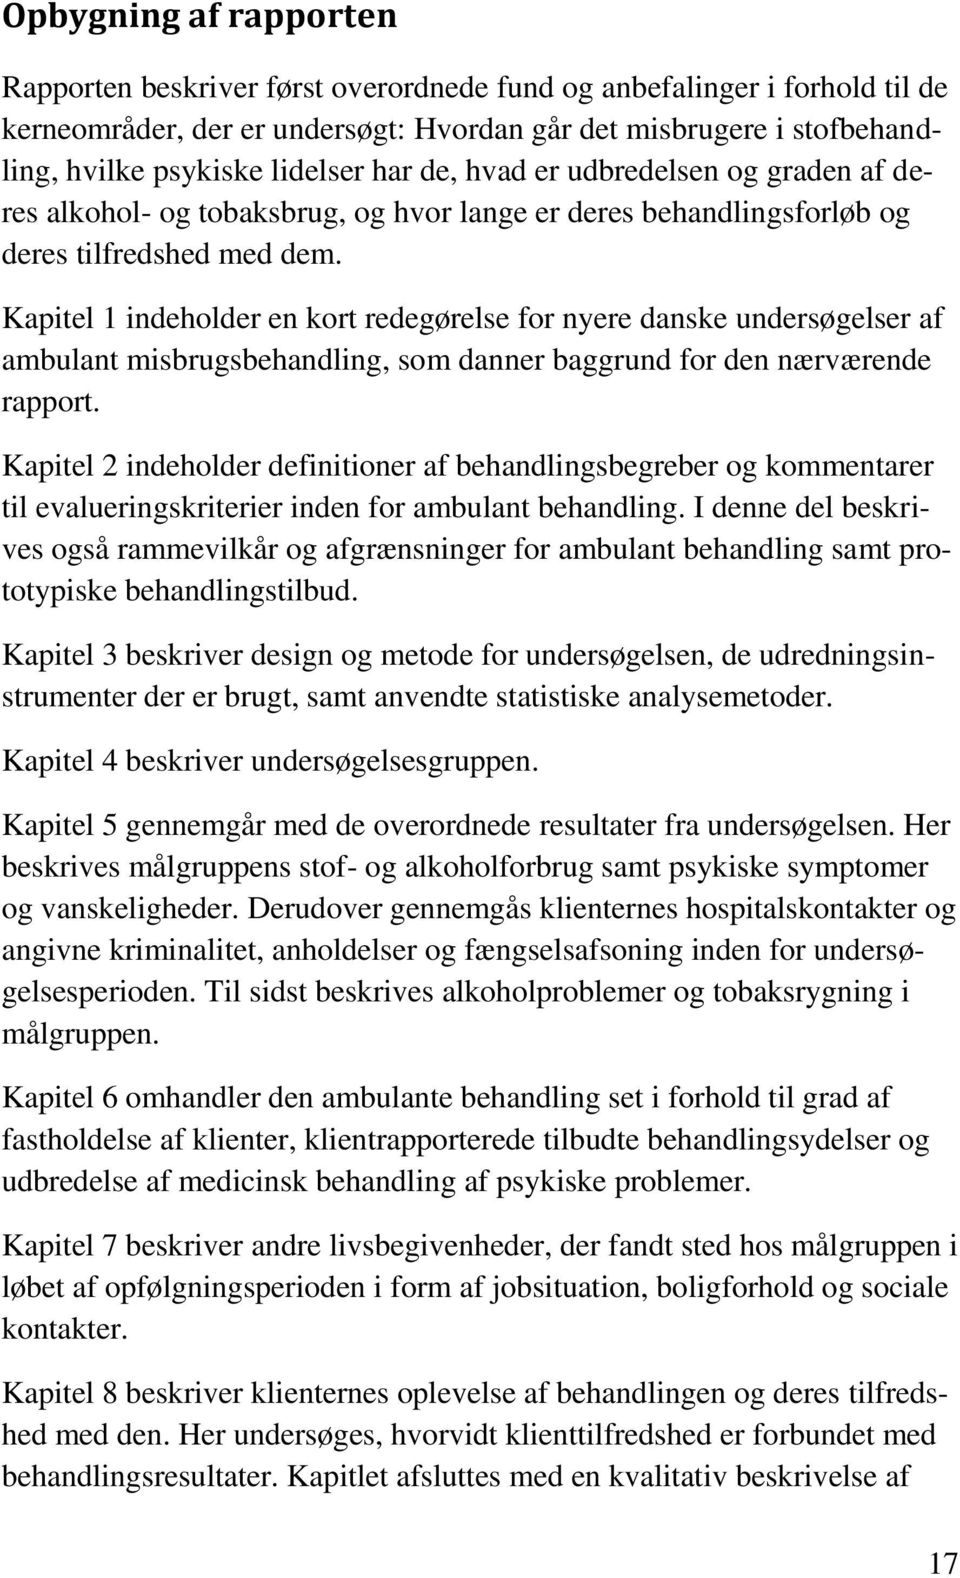 Kapitel 1 indeholder en kort redegørelse for nyere danske undersøgelser af ambulant misbrugsbehandling, som danner baggrund for den nærværende rapport.